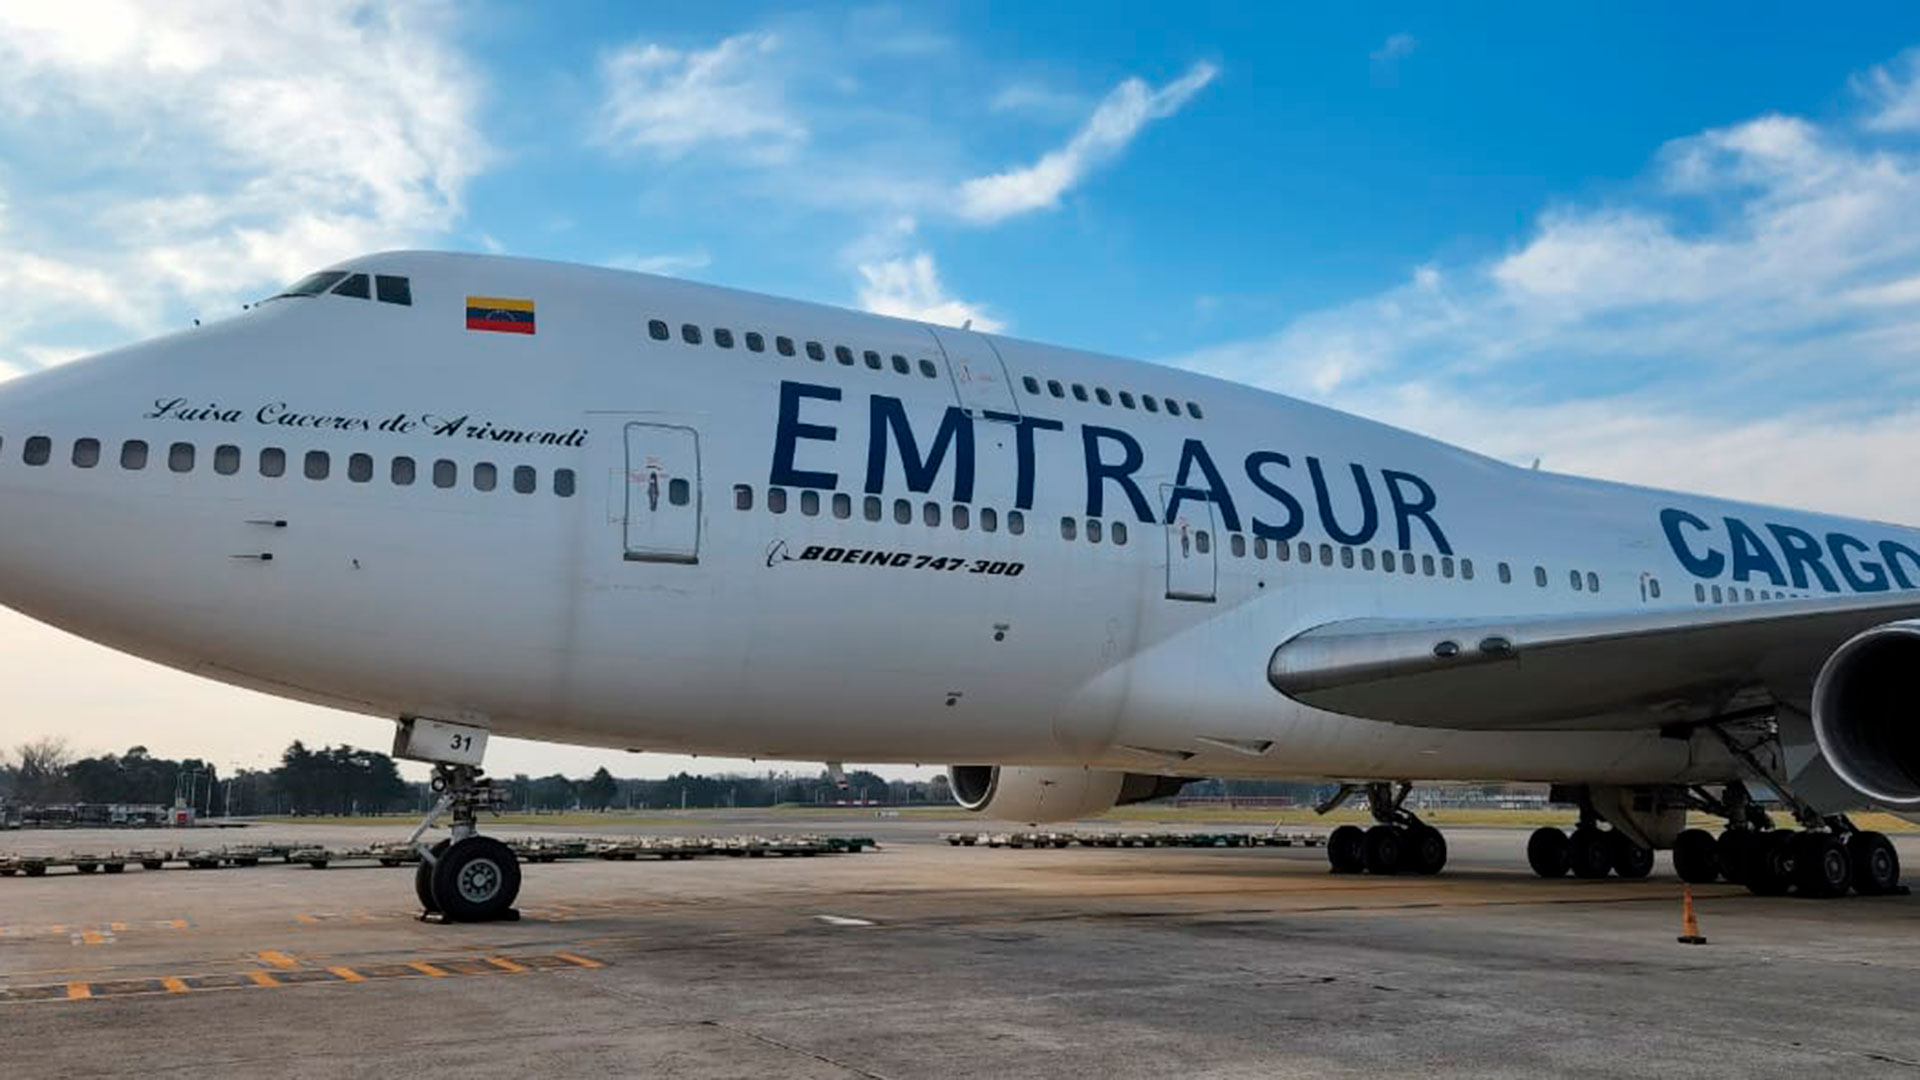 El avión venezolano-iraní de la empresa Emtrasur retenido en Ezeiza por su posible vinculación con actos terroristas que prepararía Irán en América Latina